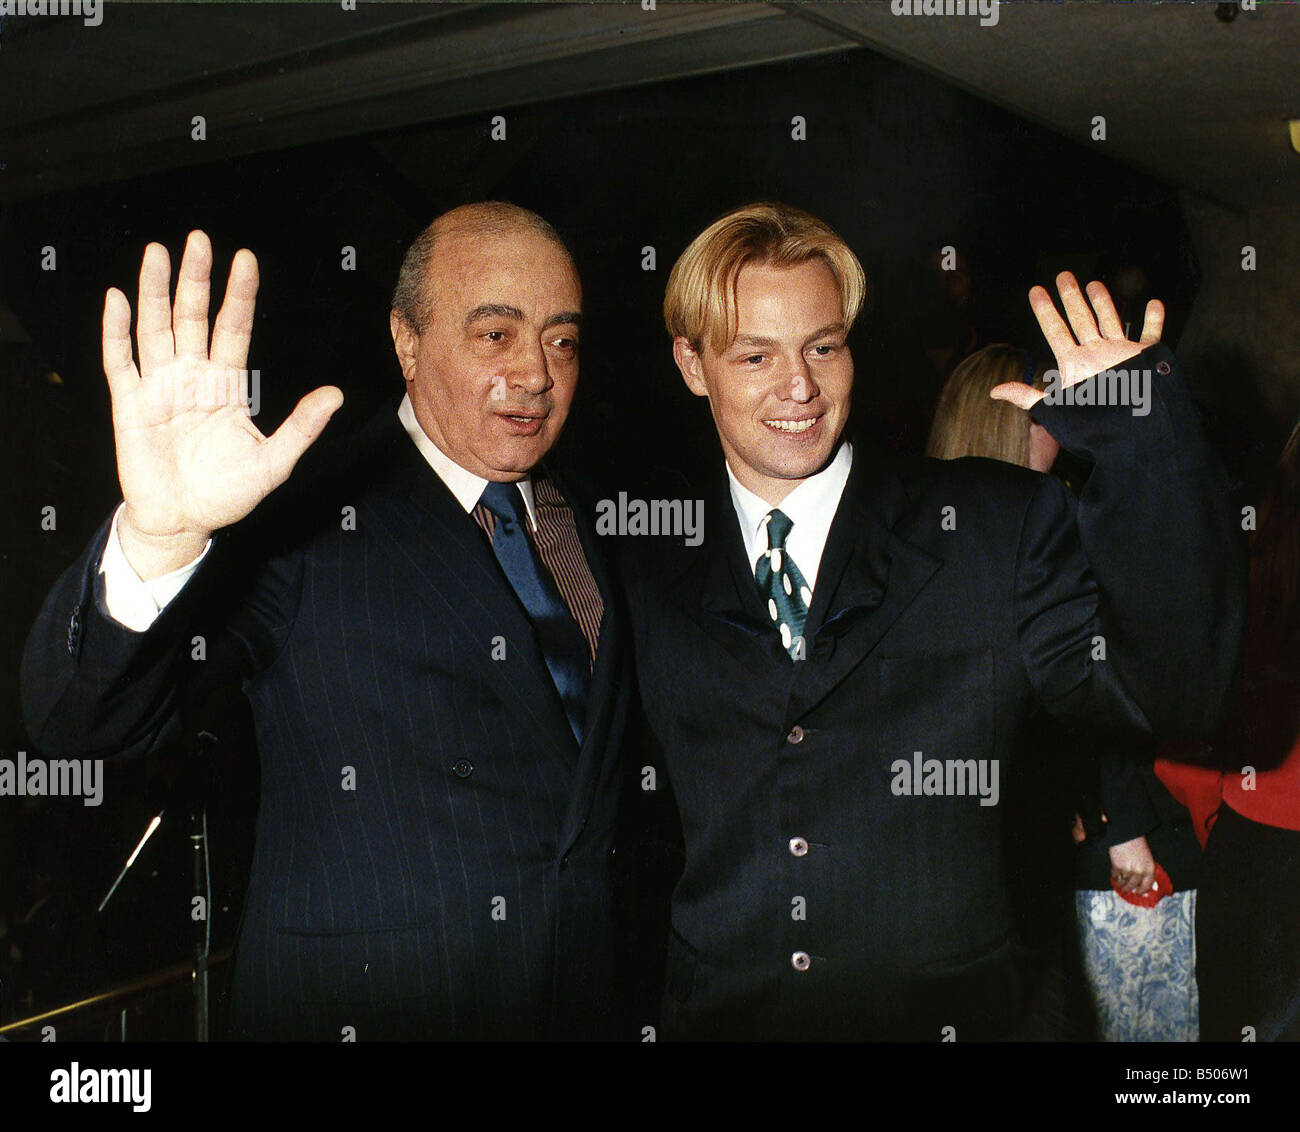 Jason Donovan with Harrods boss Al Fayed Stock Photo